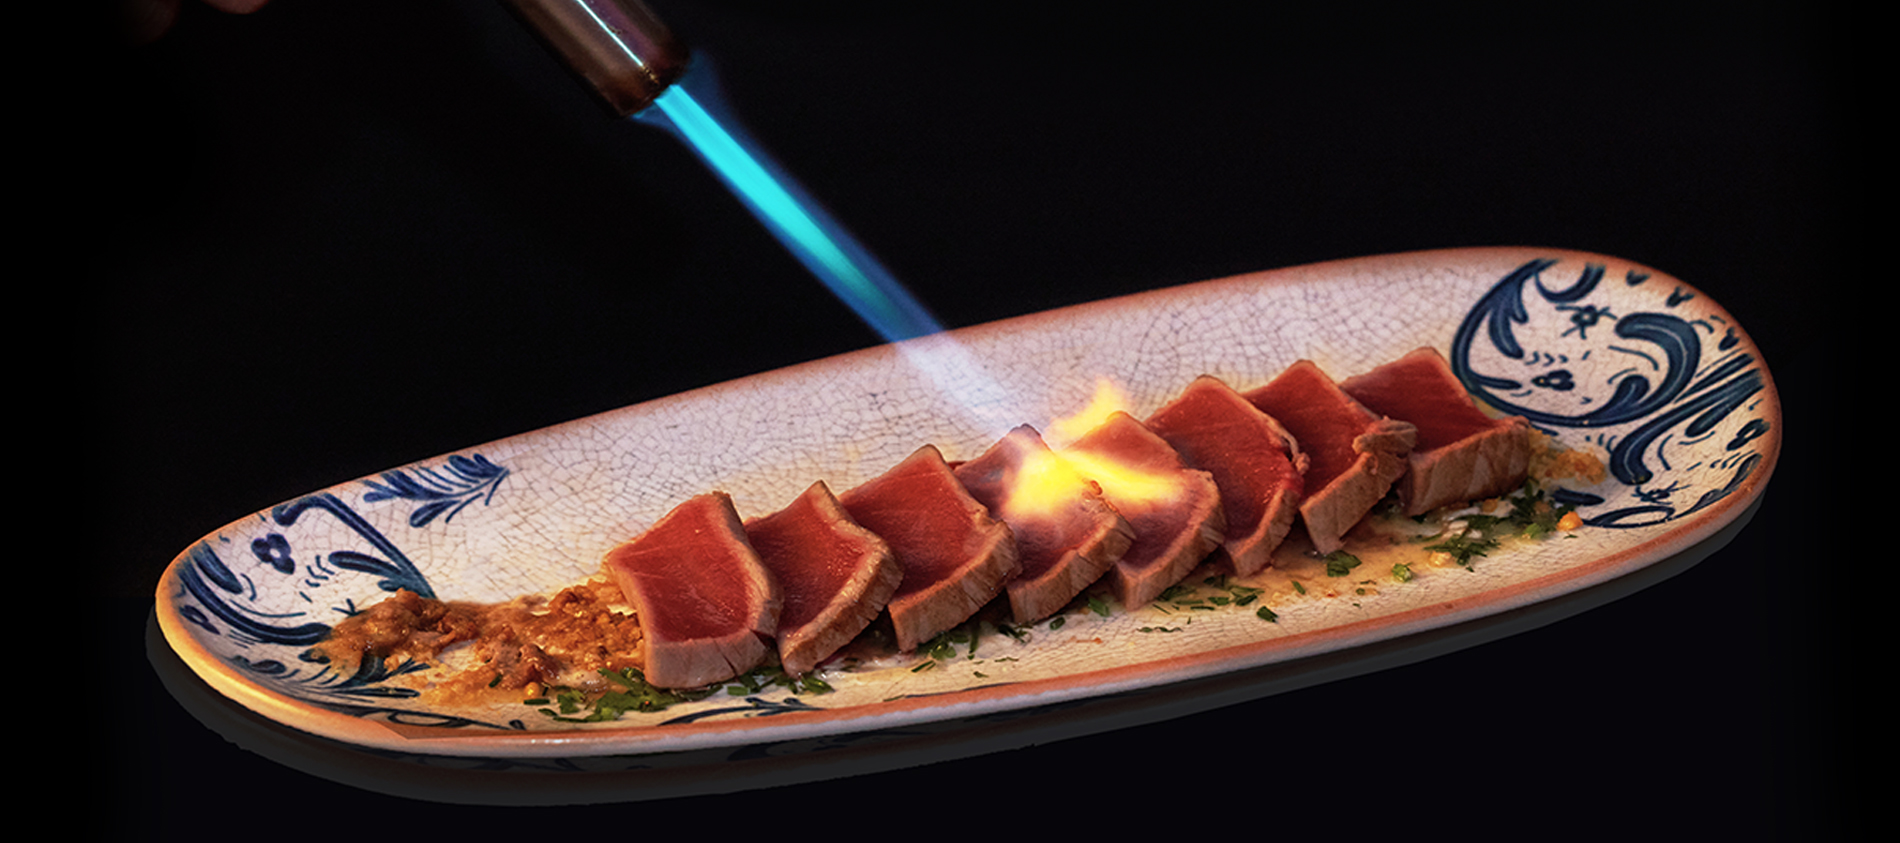 Tras más de 10 años cocinando sushi, podemos decir sin lugar a duda que hemos conseguido lanzar “El Tataki más rico del mundo”.